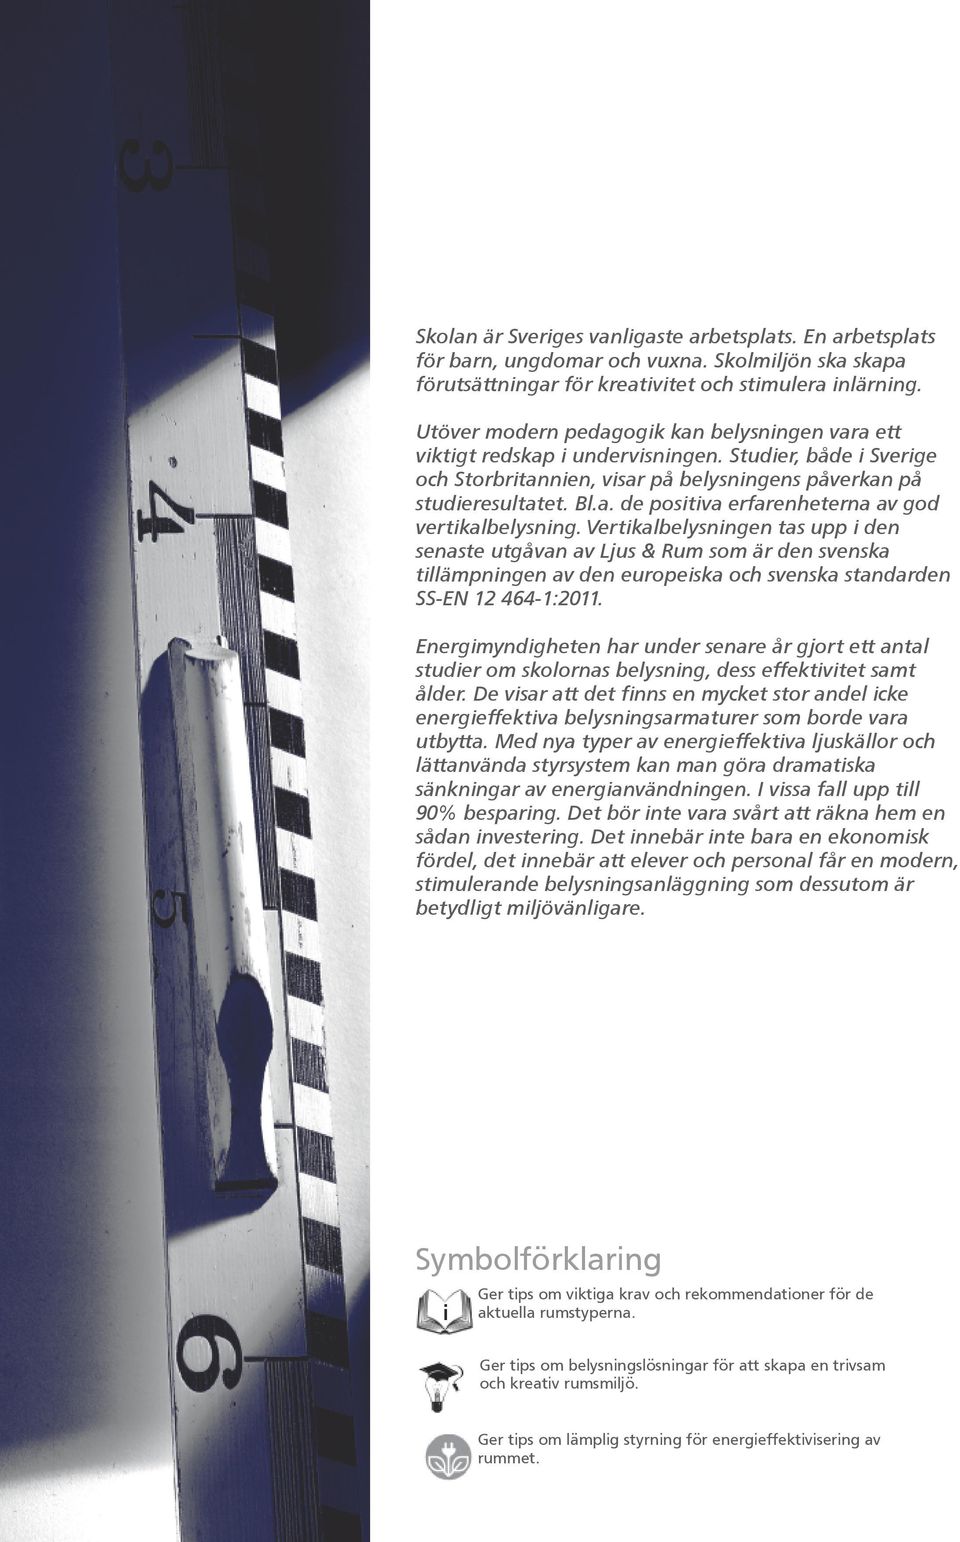 Vertkalbelysnngen tas upp den senaste utgåvan av Ljus & Rum som är den svenska tllämpnngen av den europeska och svenska standarden SS EN 12 464 1:2011.